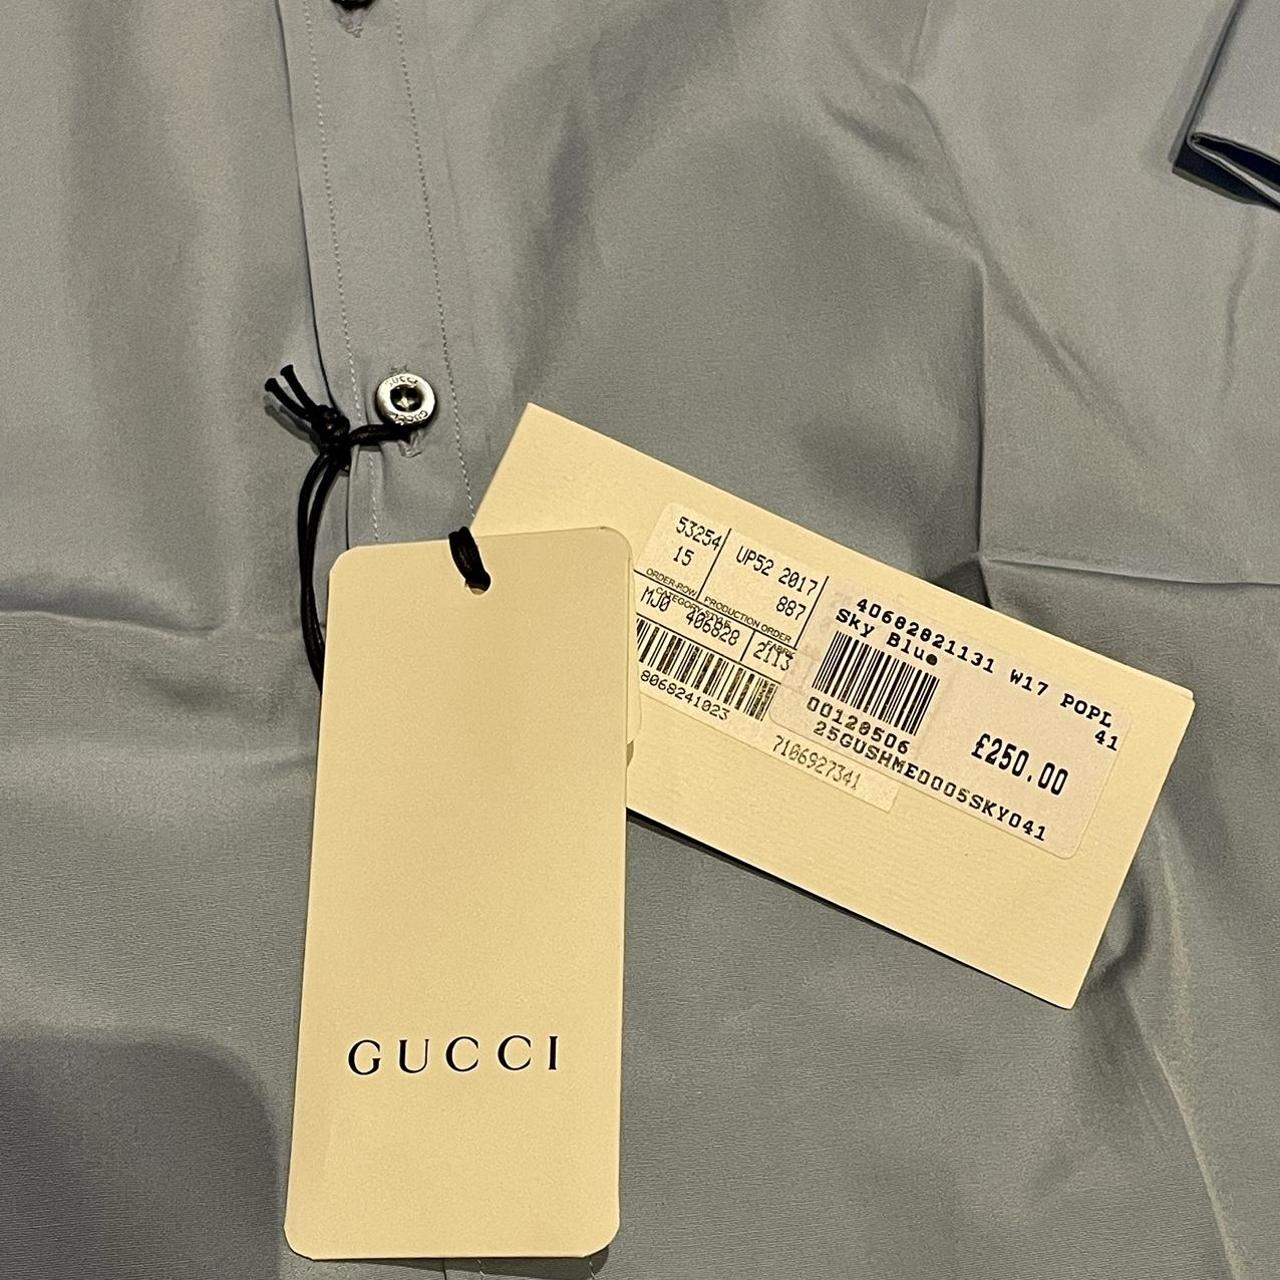 Brand new Gucci button up Shirt Regular fit 100%... - Depop